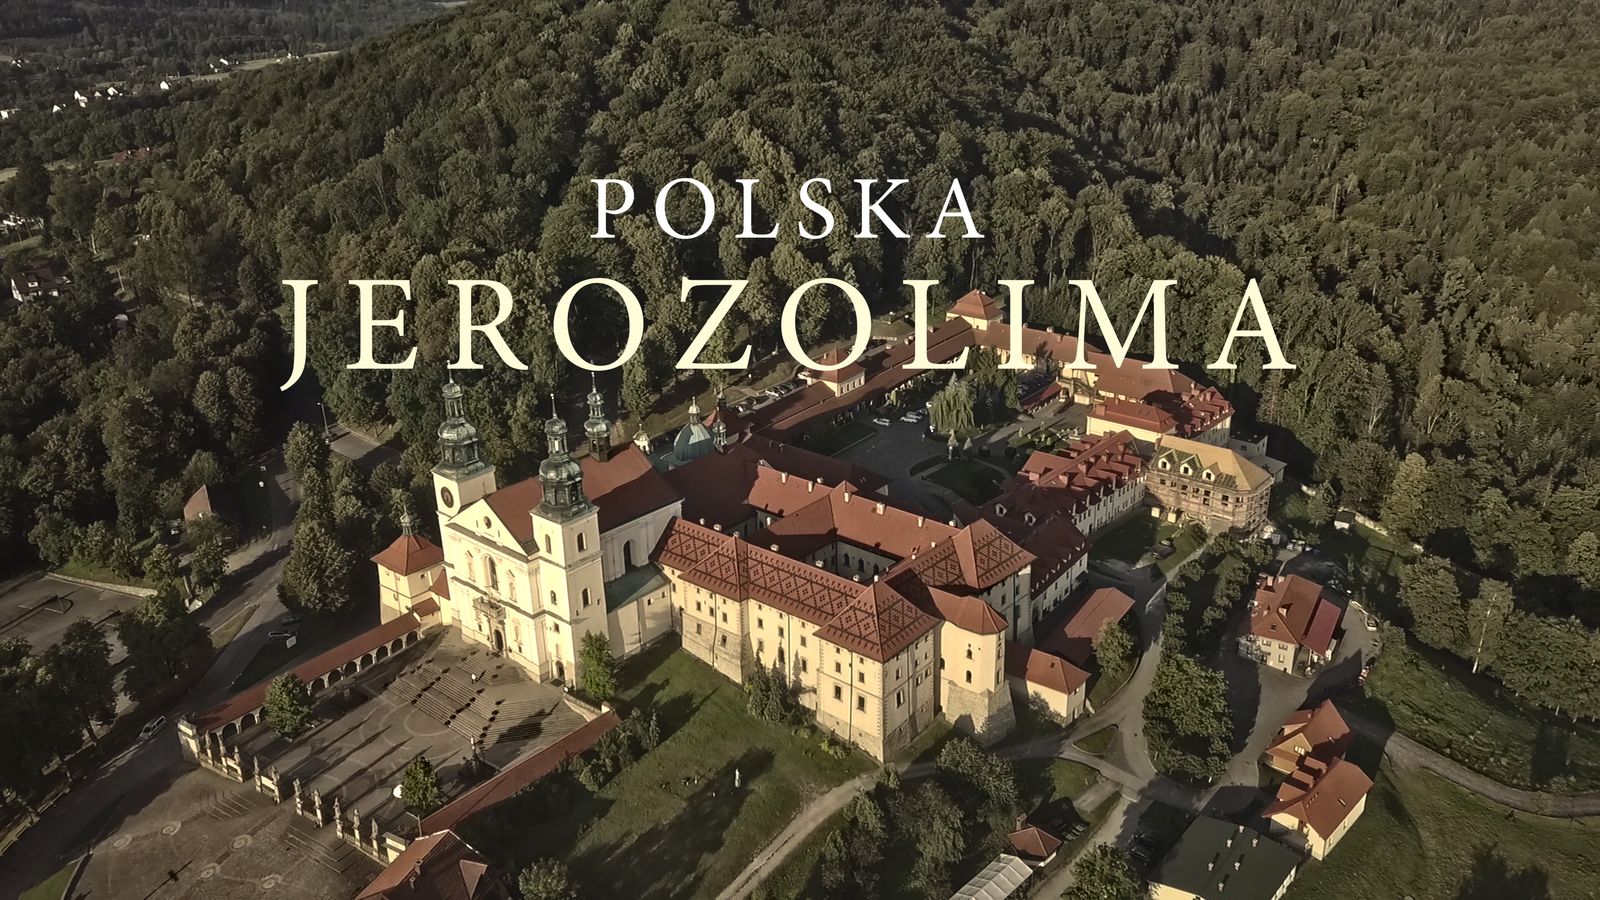 W Wielki Piątek odbędzie się premiera filmu „Polska Jerozolima” w telewizji. Zapraszamy do obejrzenia zwiastuna